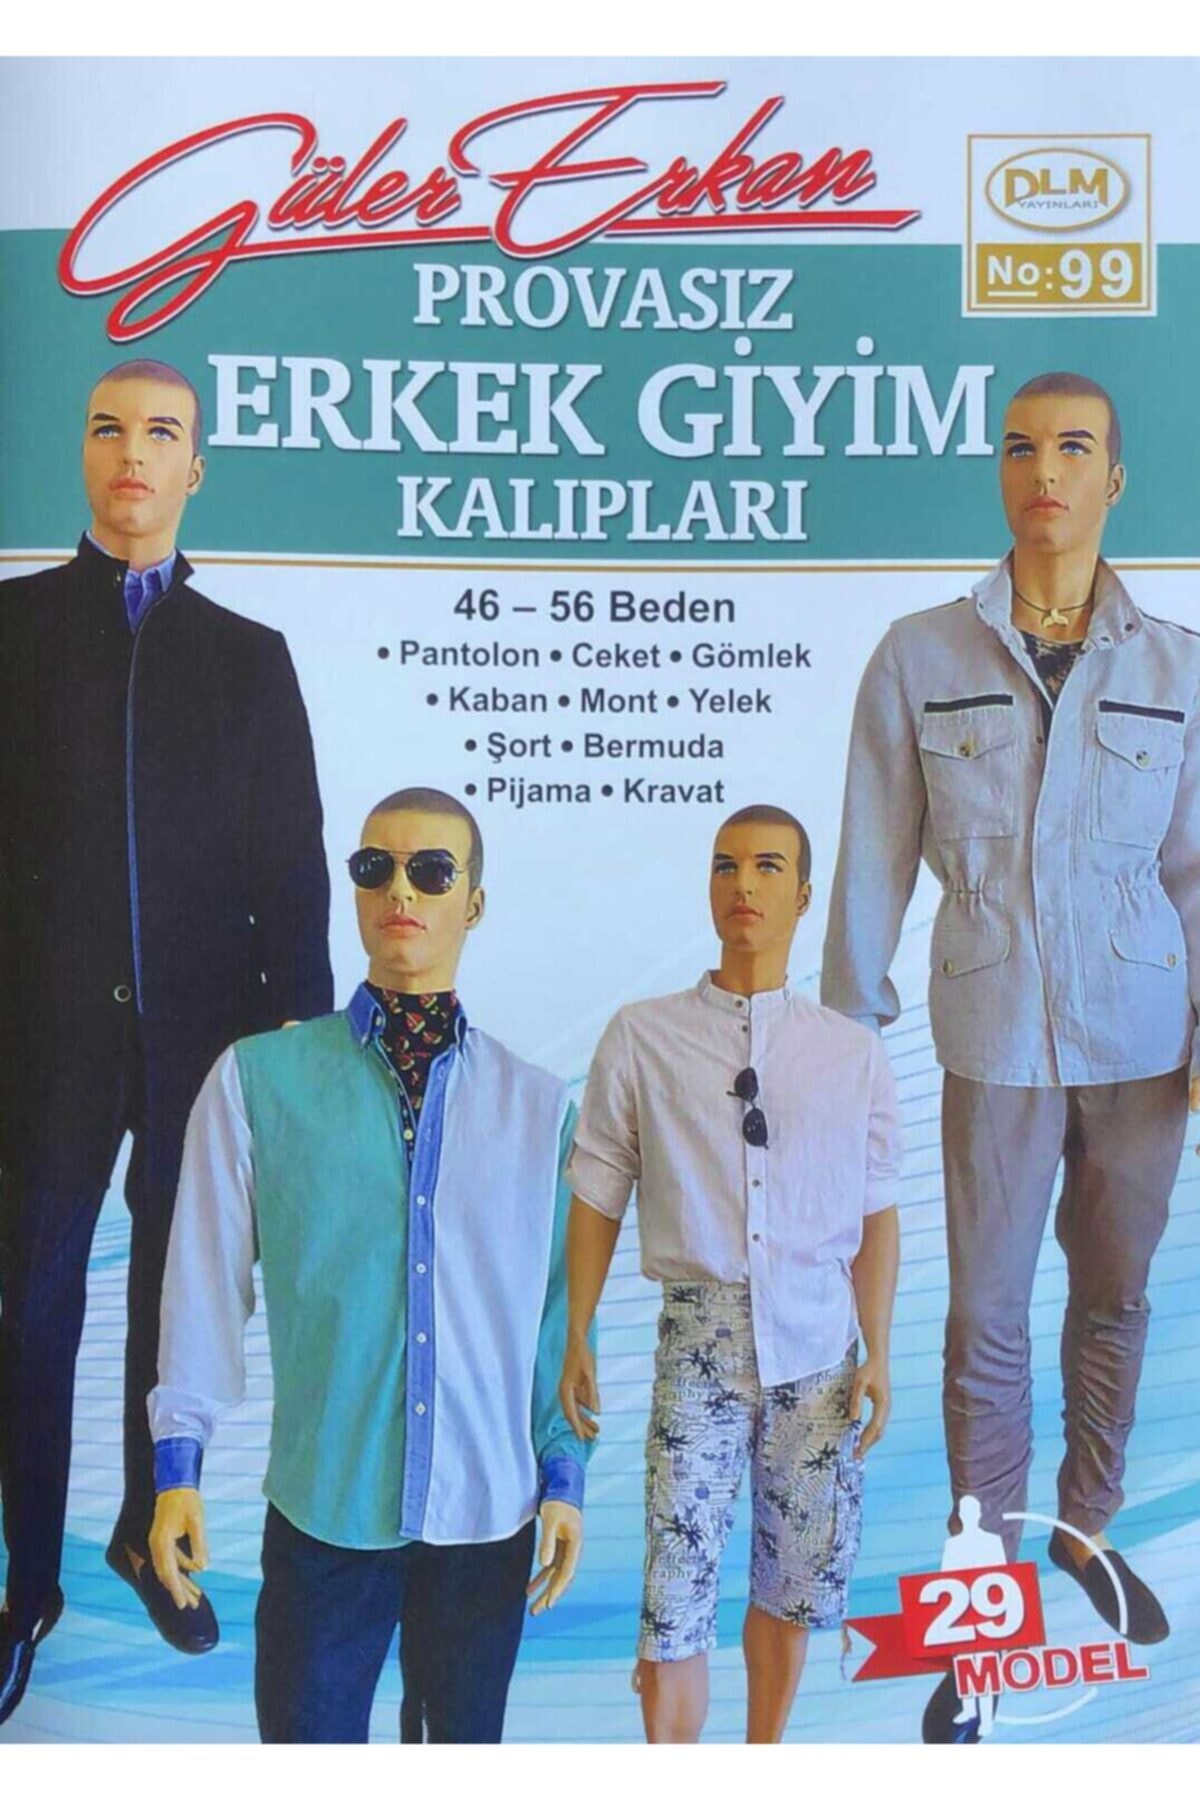 Dilem Yayınları Güler Erkan Provasız Erkek Giyim Kalıpları No 99